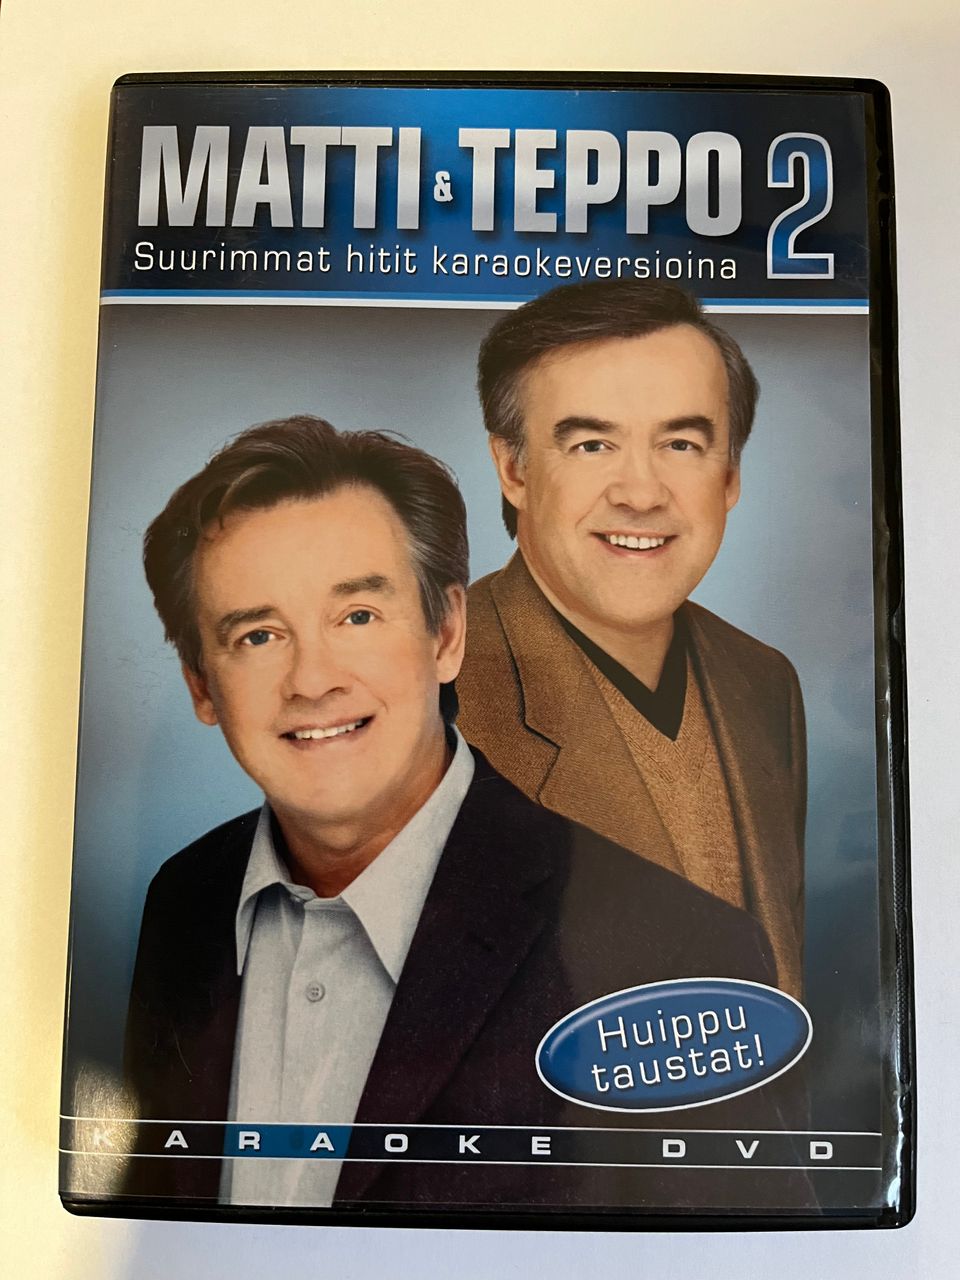 Matti&Teppo 2(Suurimmat hitit karaokeversiona)